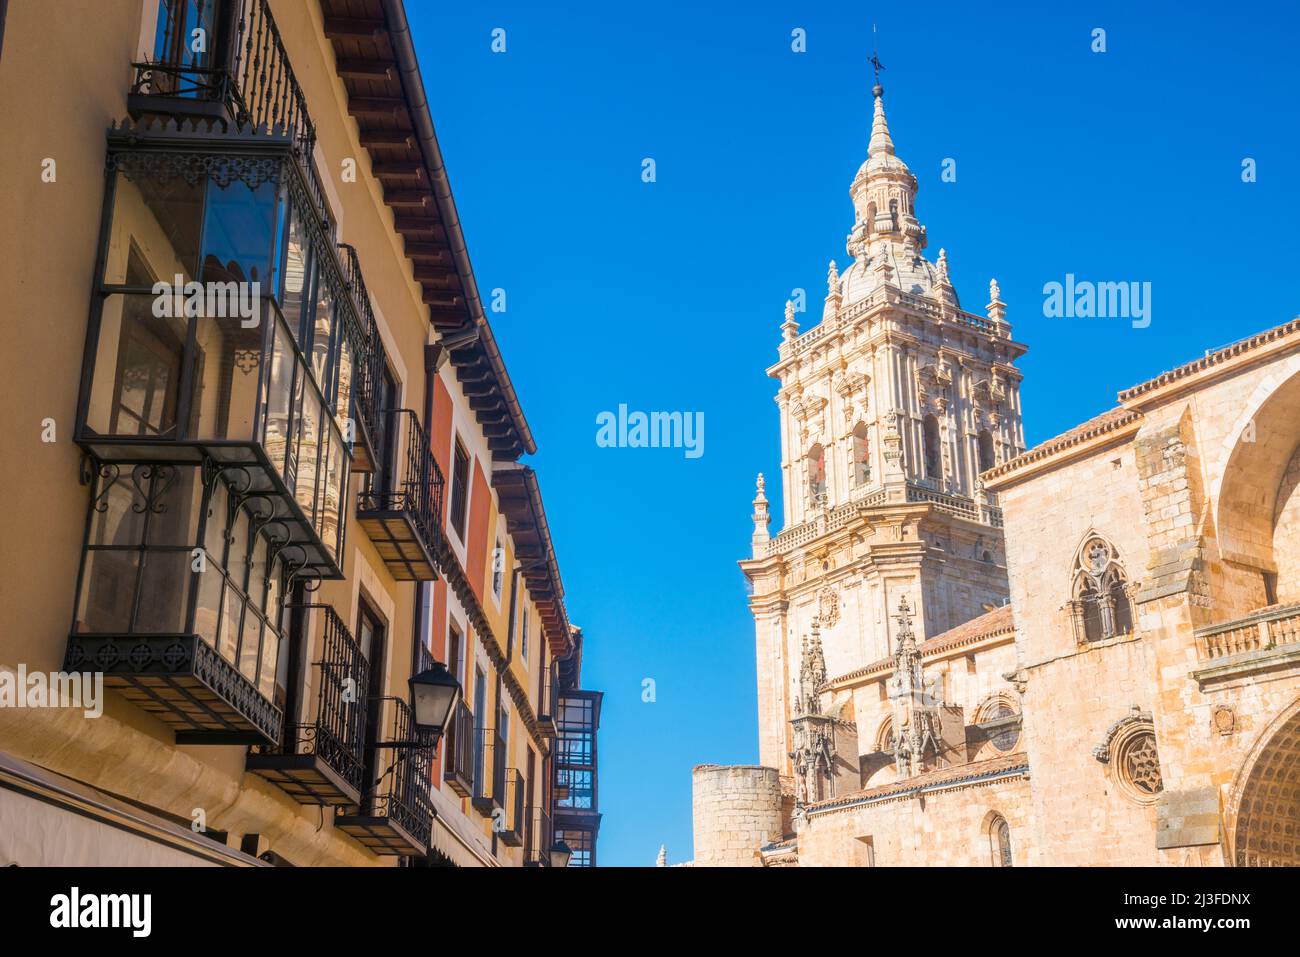 Facade of house and cathedral. Burgo de Osma, Soria province, Castilla Leon, Spain. Stock Photo